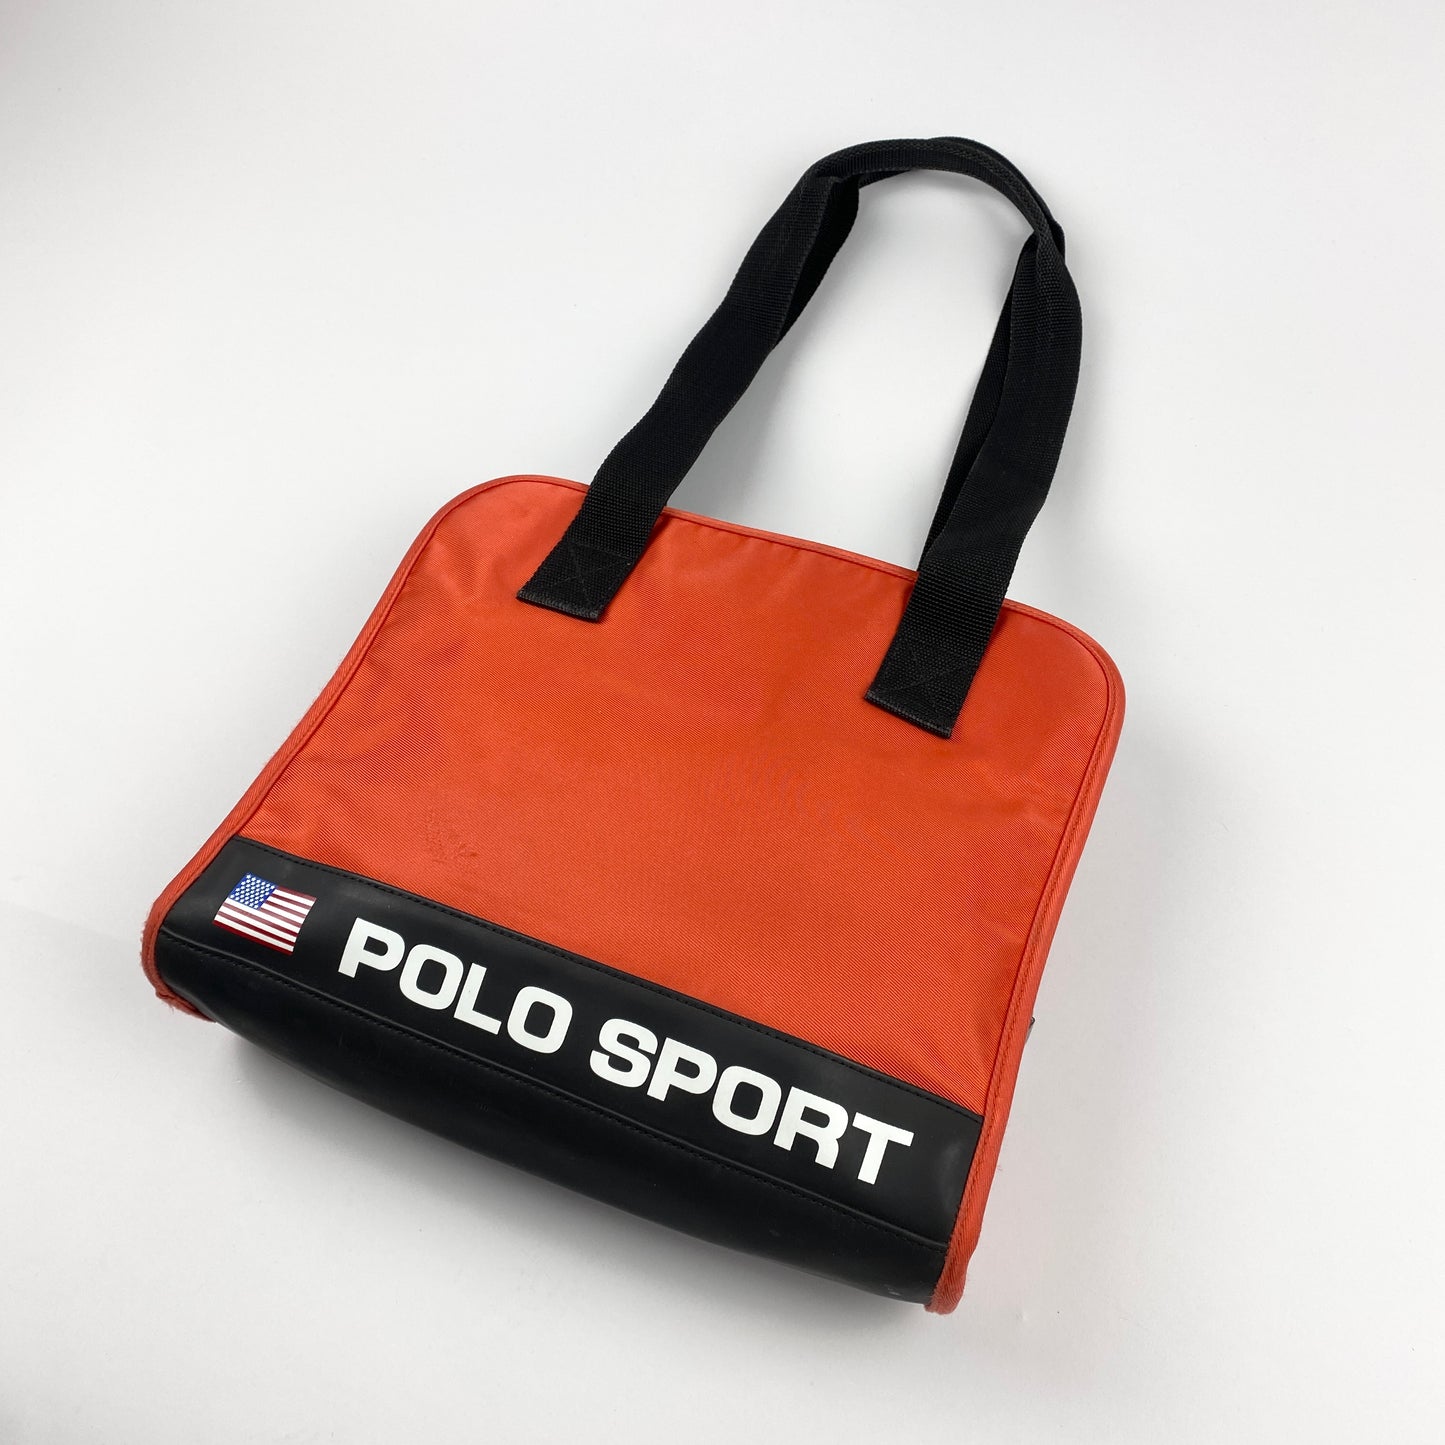 POLO SPORT RALPH LAUREN Purse / Handtasche